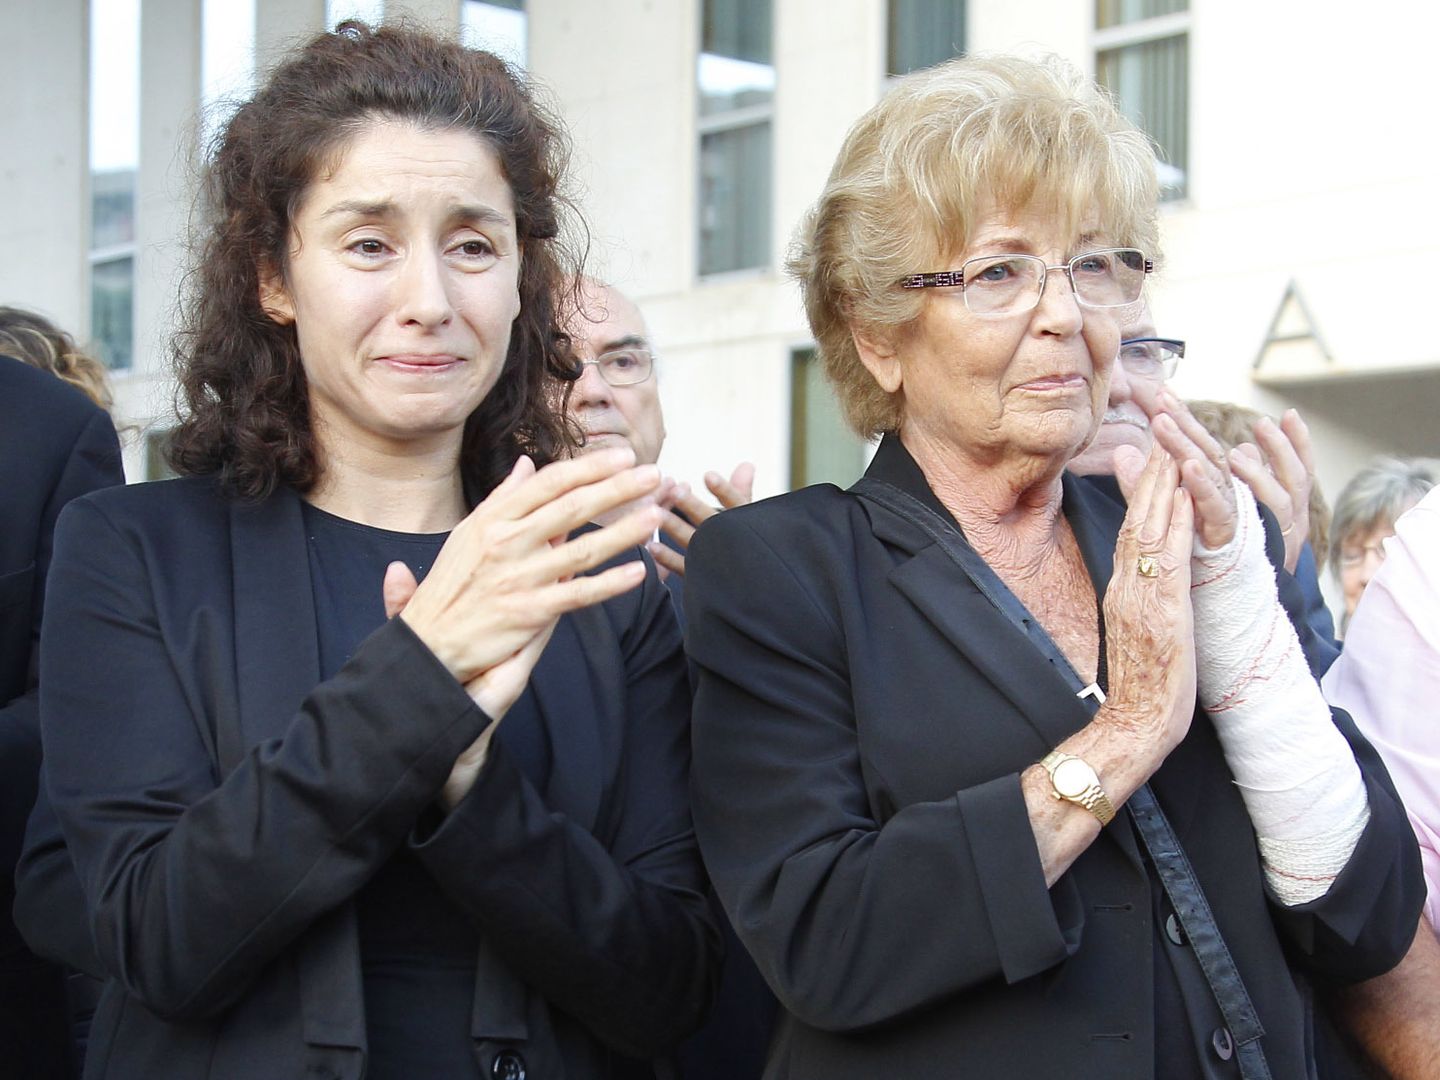 Vanessa García y su madre, Anita Marx, en el entierro de Manolo Escobar en 2013 (Gtres)